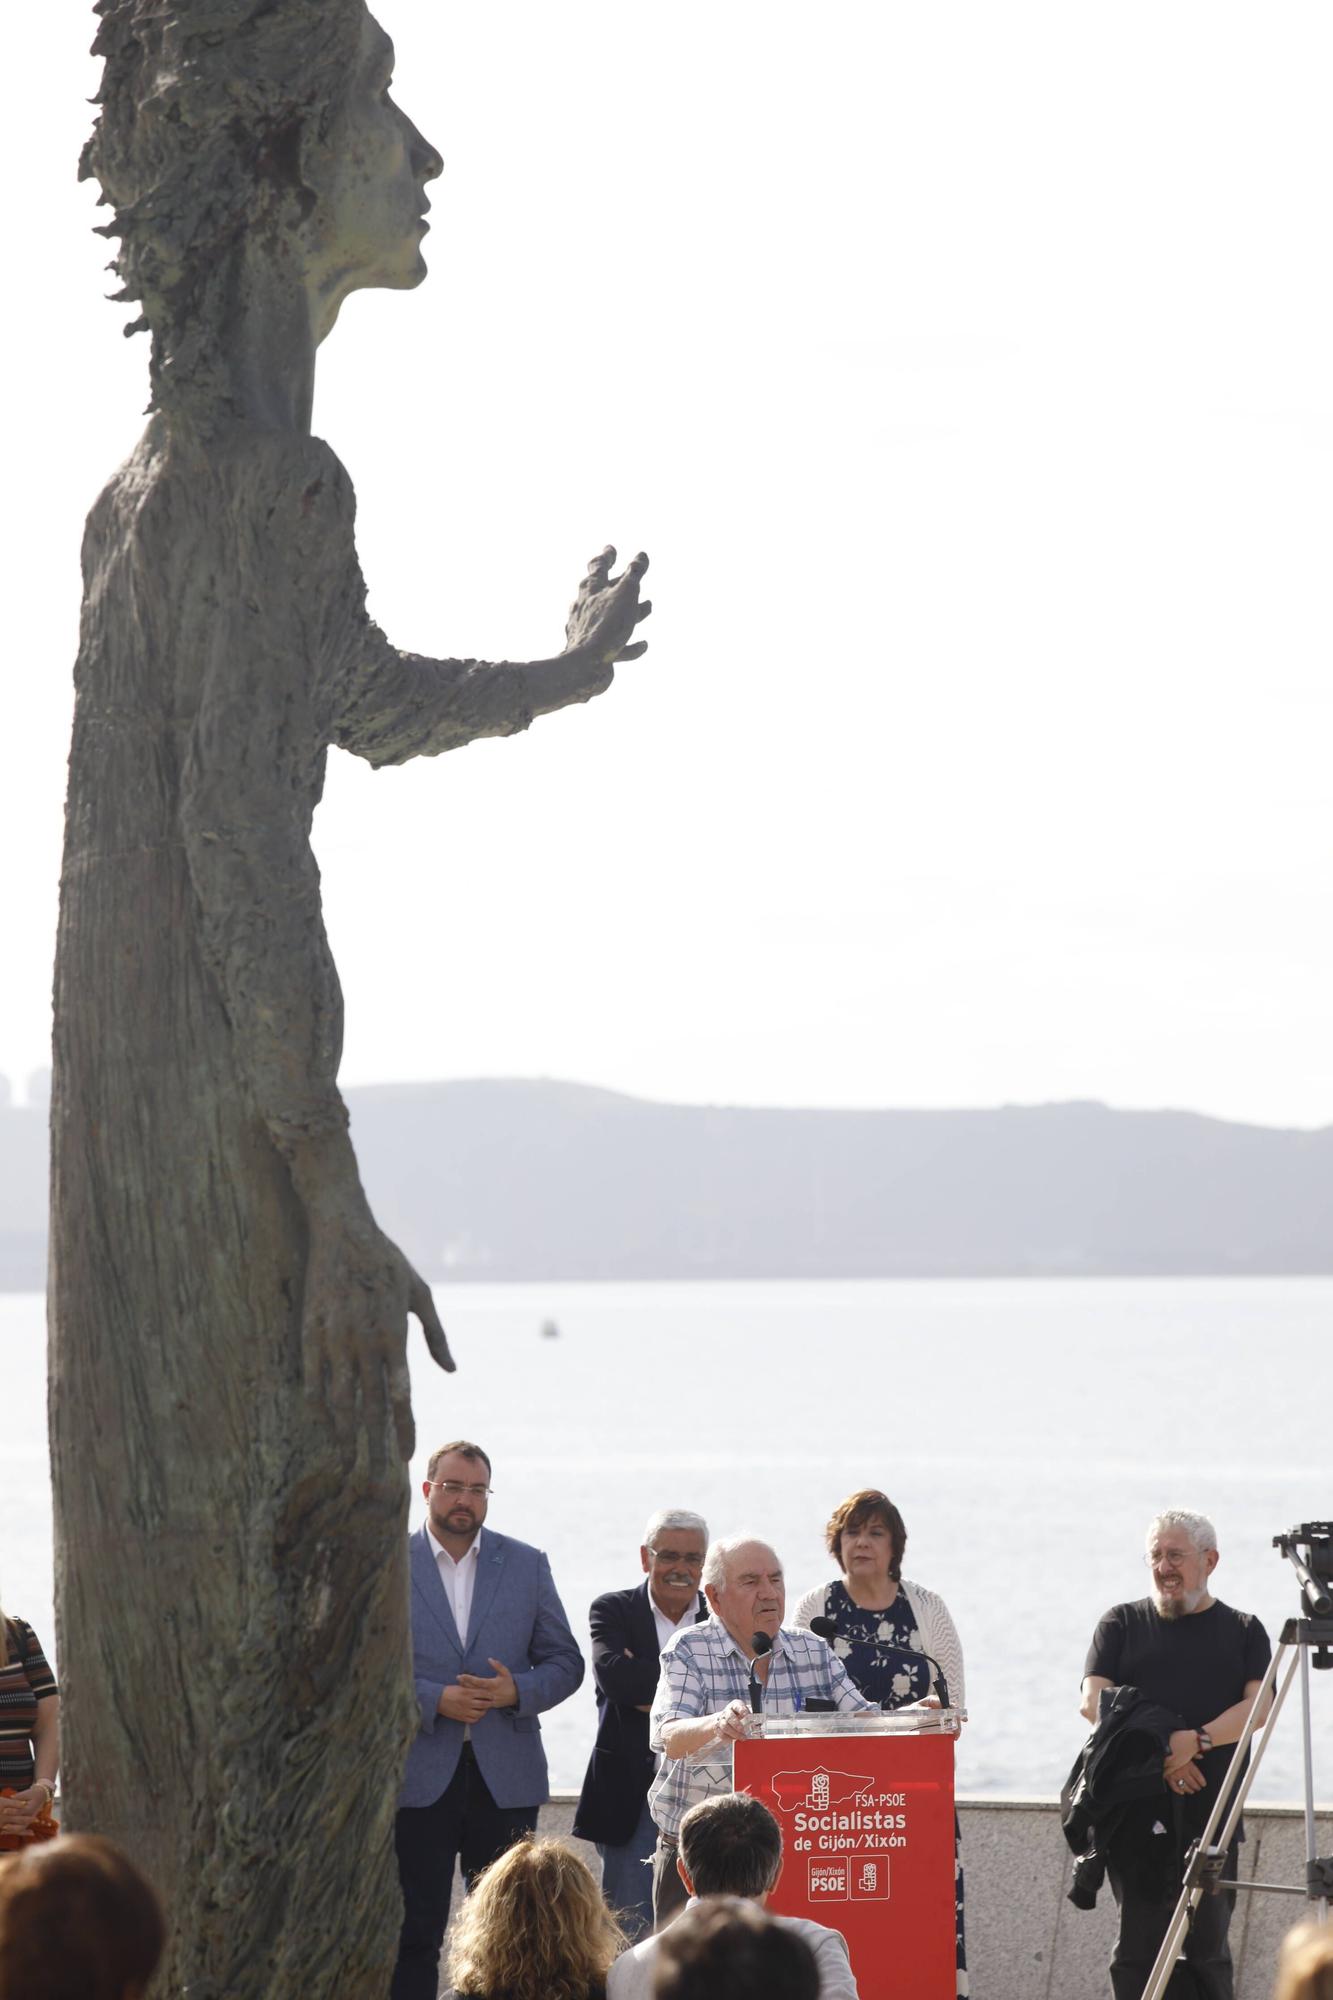 EN IMÁGENES:  Así fue el homenaje a los exiliados por la Guerra Civil y la posterior represión franquista organizado por los socialistas de Gijón junto a la estatua de "La Madre del Emigrante"